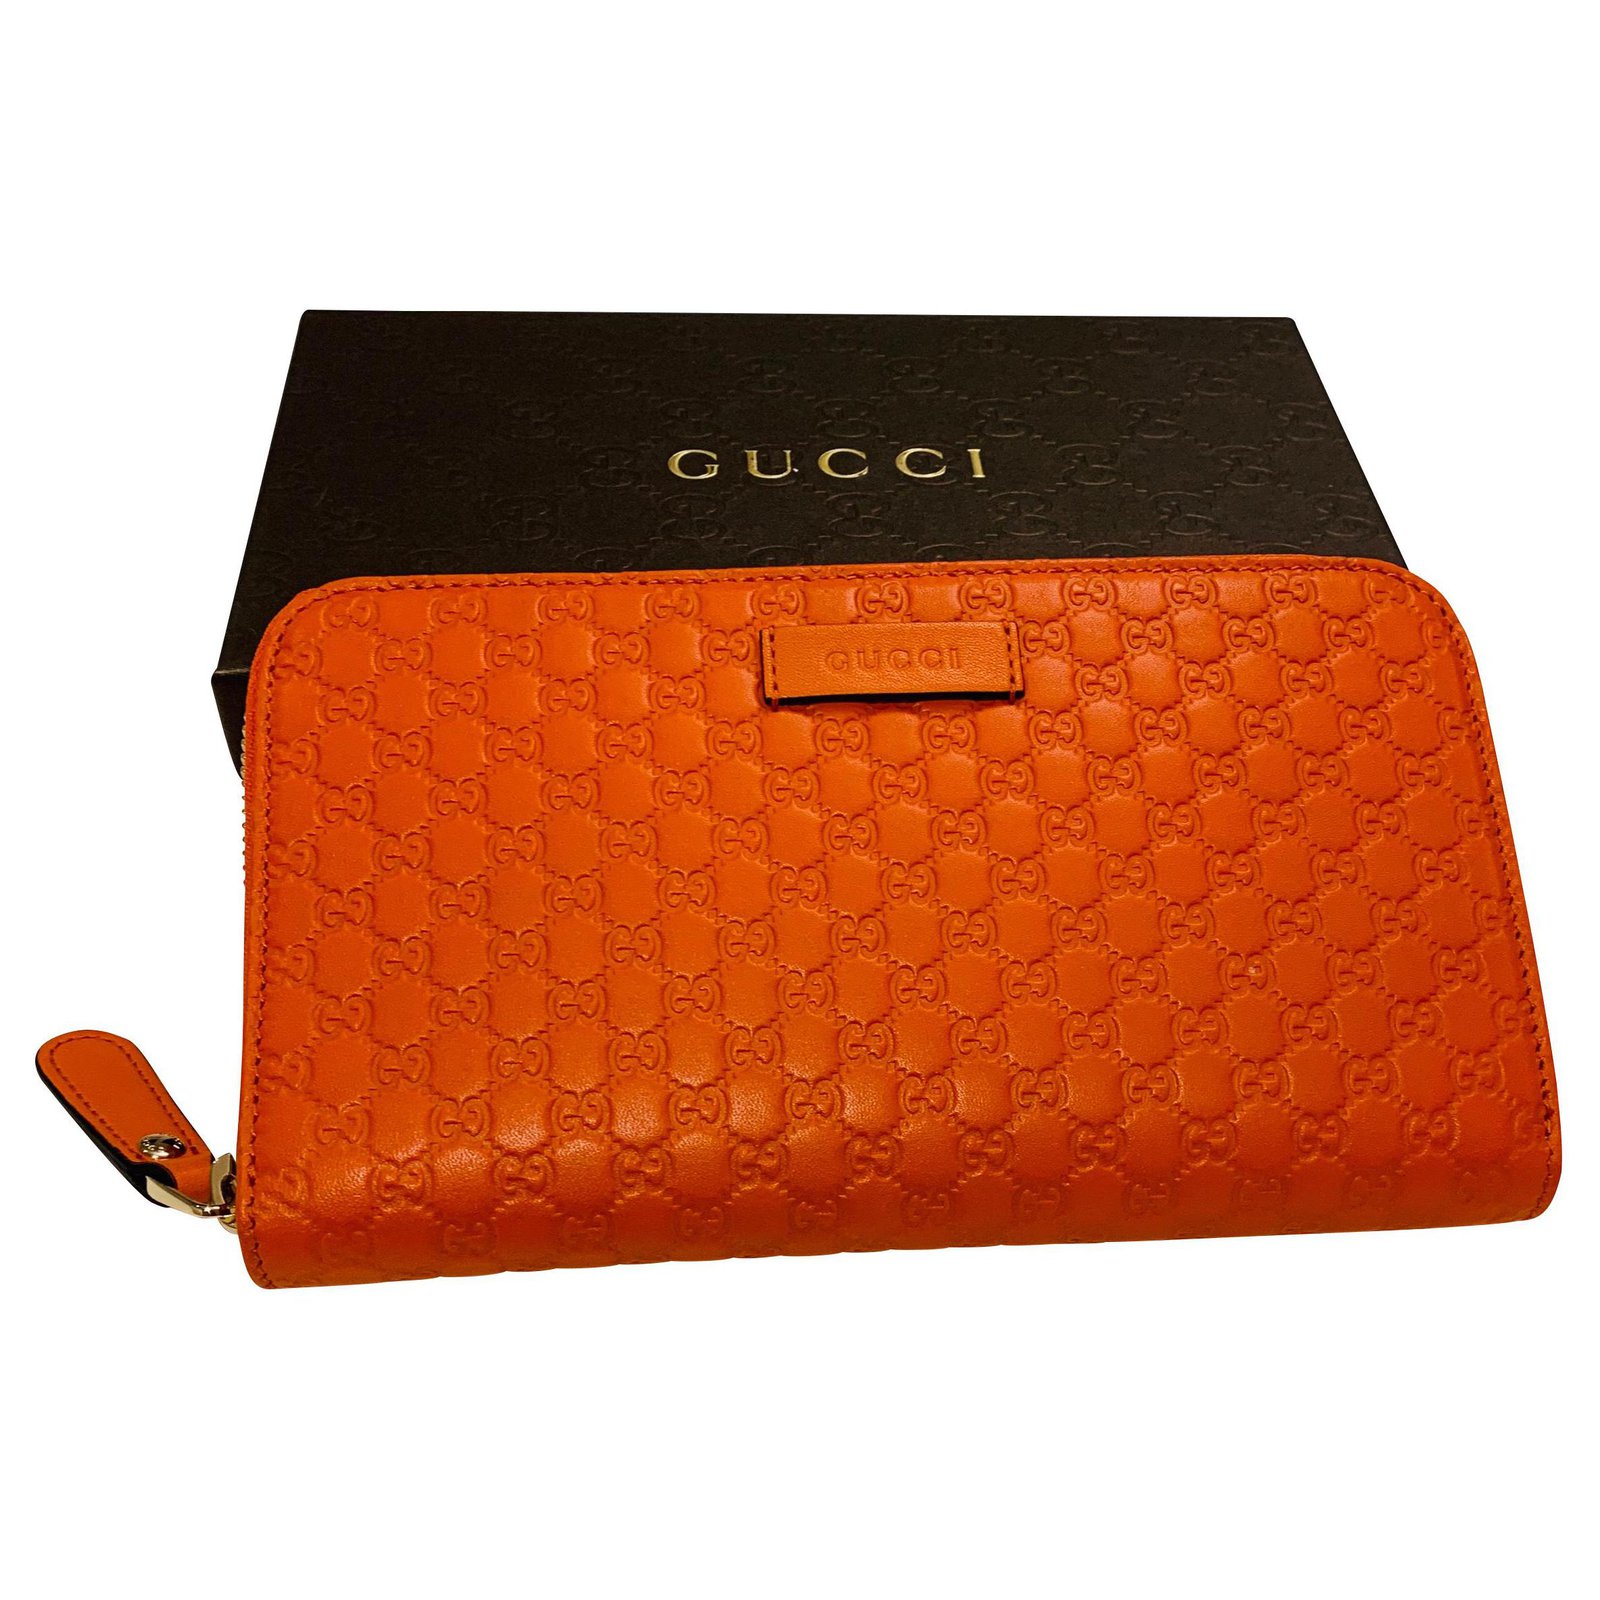 gucci wallet orange